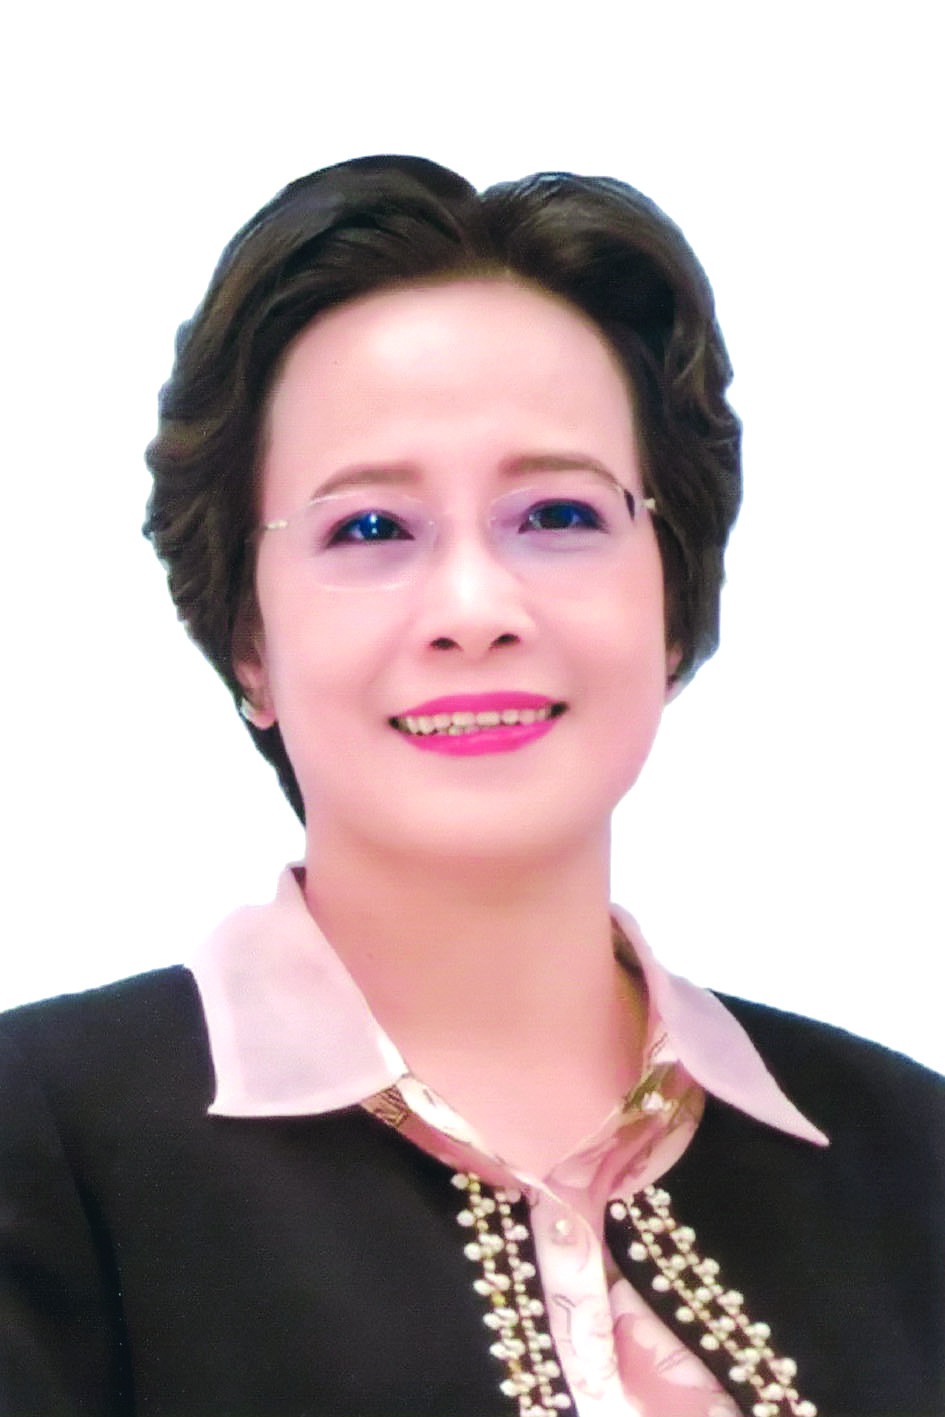 Chương trình hành động của bà Nguyễn Thị Lan Hương, ứng cử viên đại biểu HĐND TP Hà Nội nhiệm kỳ 2021 - 2026 - Ảnh 1